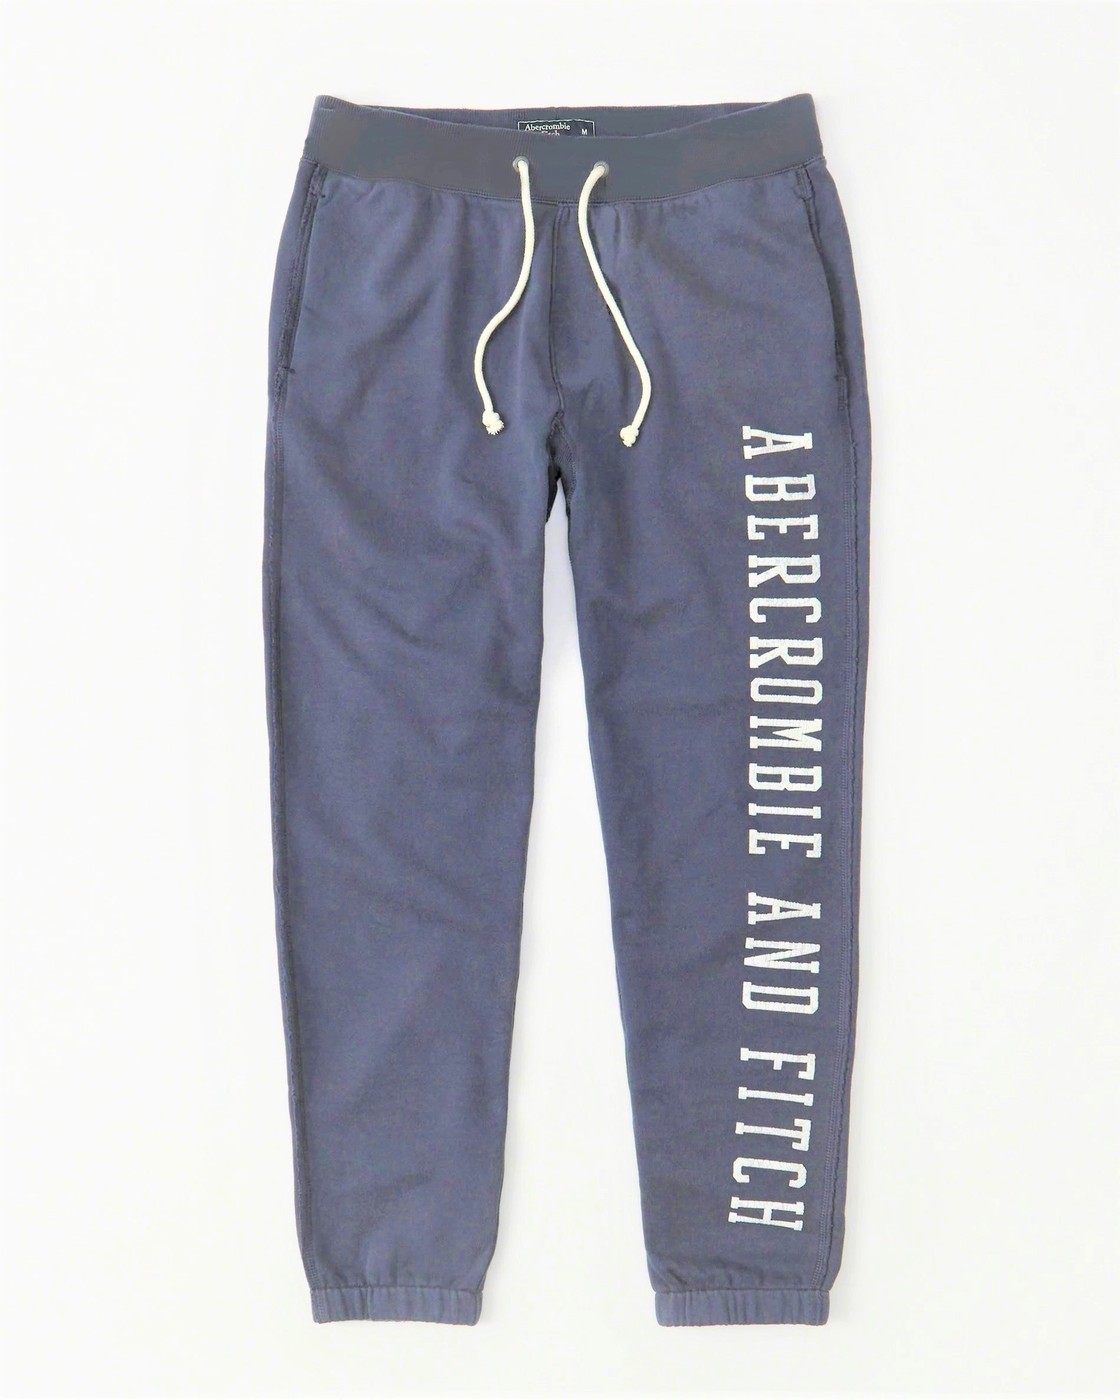 Спортивные штаны - мужские спортивные штаны Abercrombie & Fitch, S, S